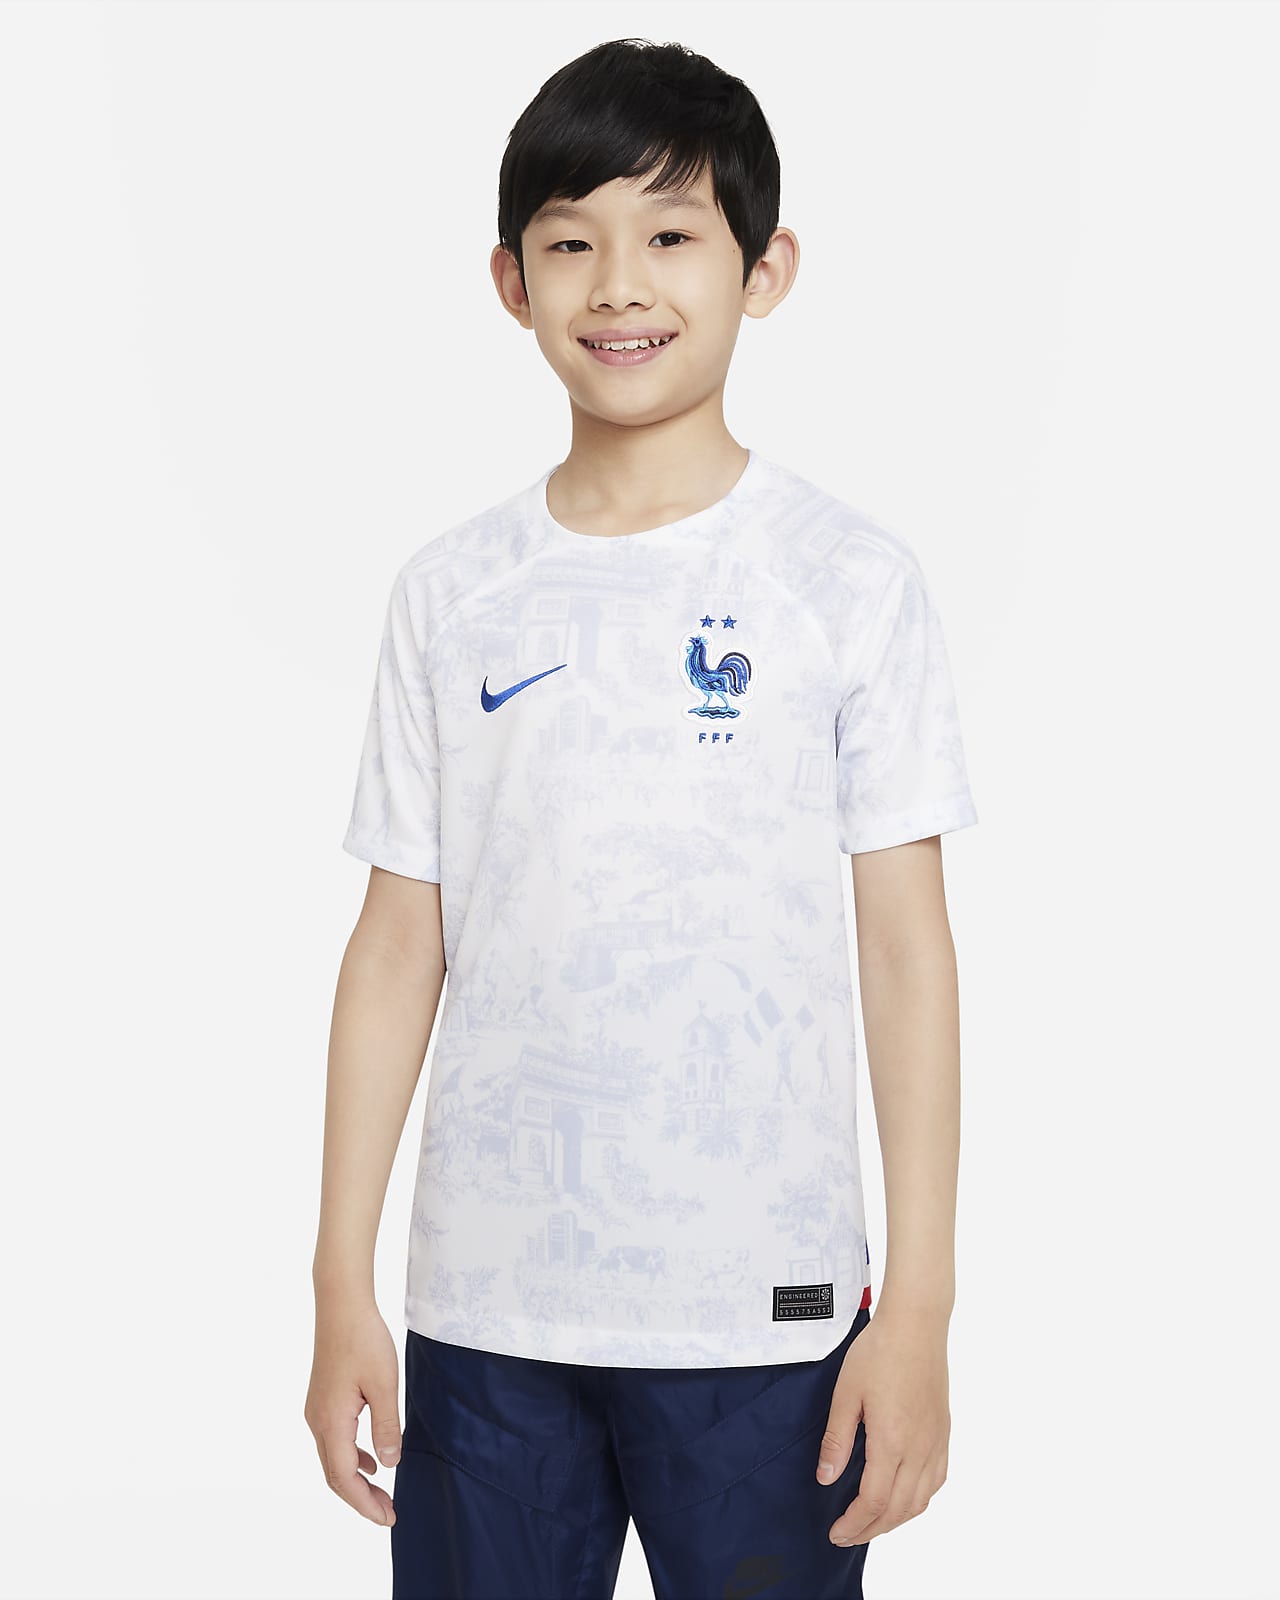 FFF 2022/23 Stadium Away Older Kids' Nike Dri-FIT Football Shirt